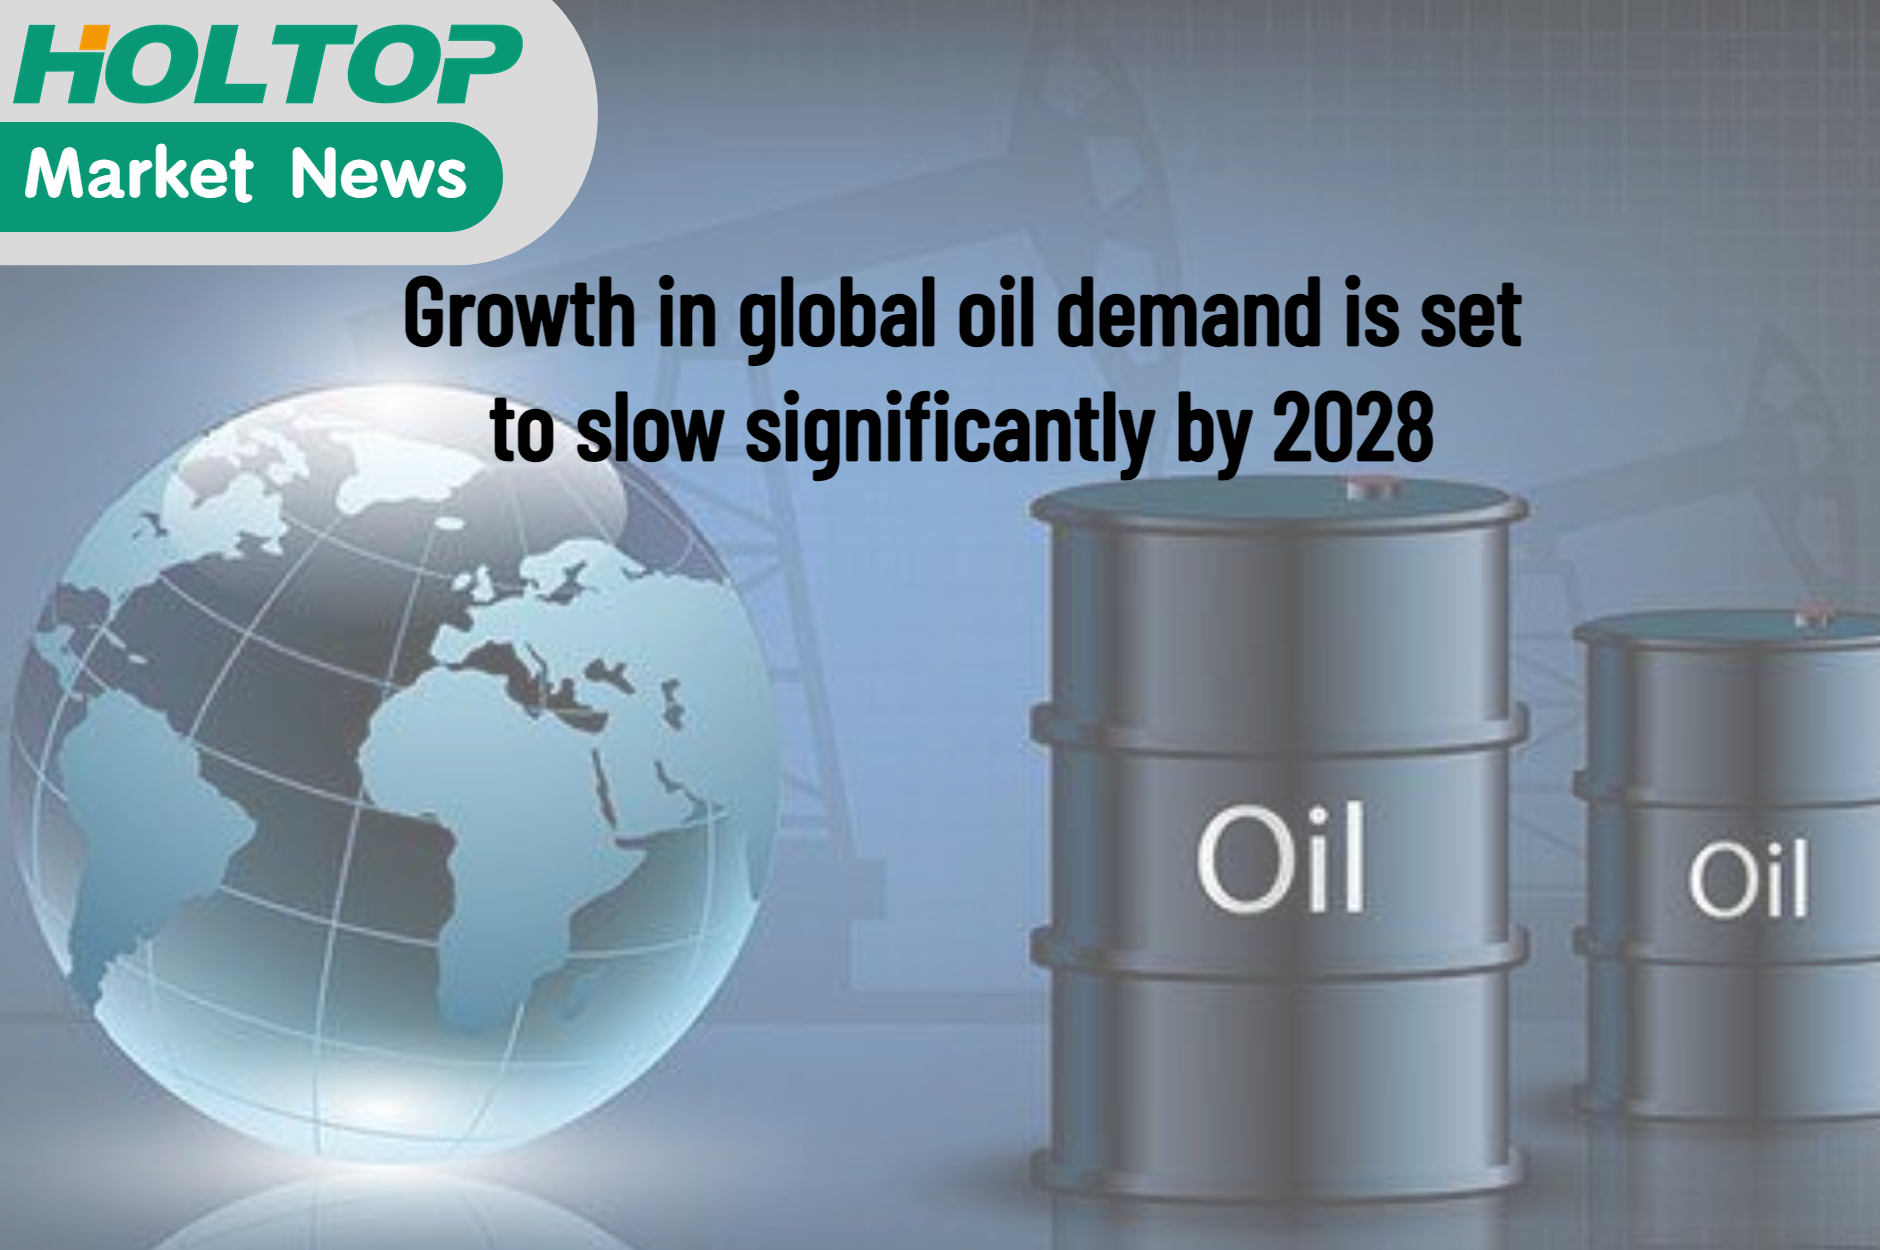 De groei van de wereldwijde vraag naar olie zal tegen 2028 aanzienlijk vertragen